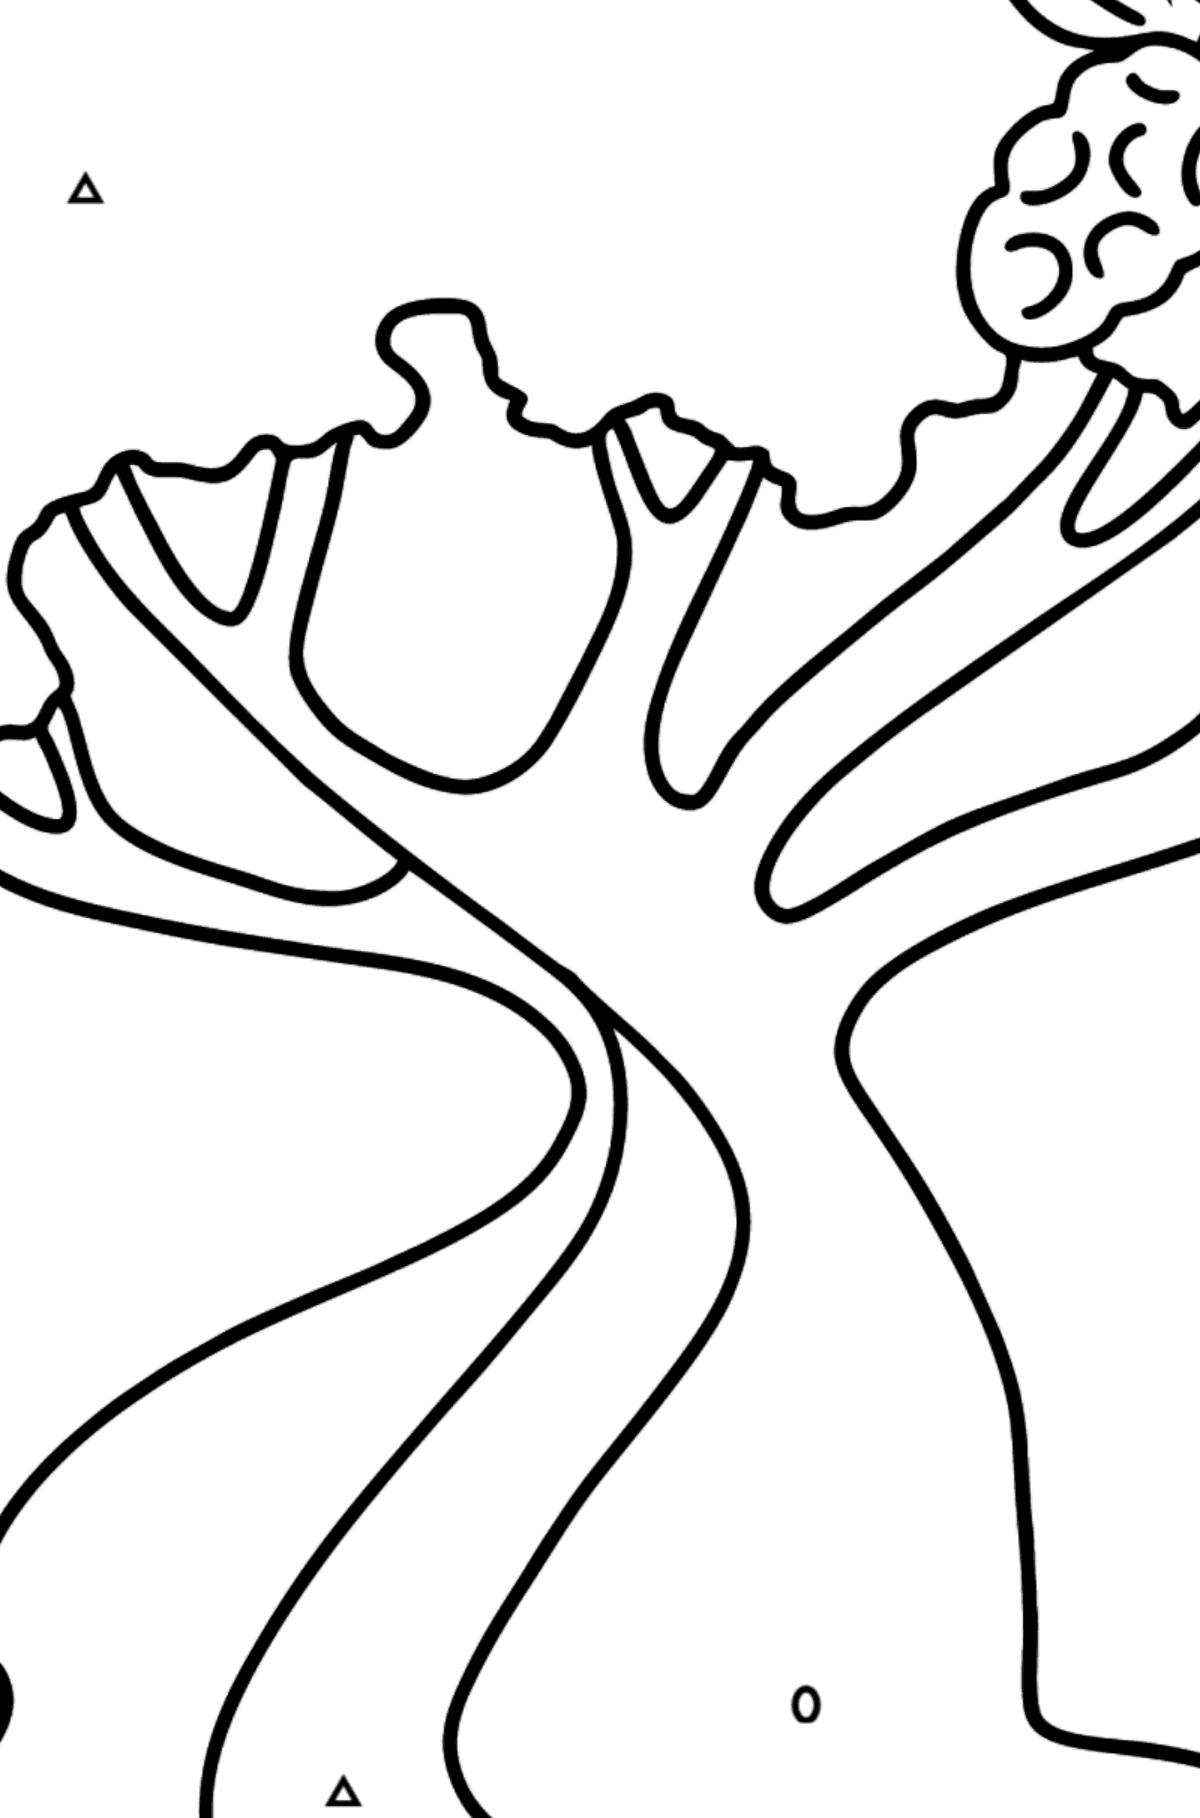 Dibujo de Árbol de algodón para colorear - Colorear por Símbolos para Niños